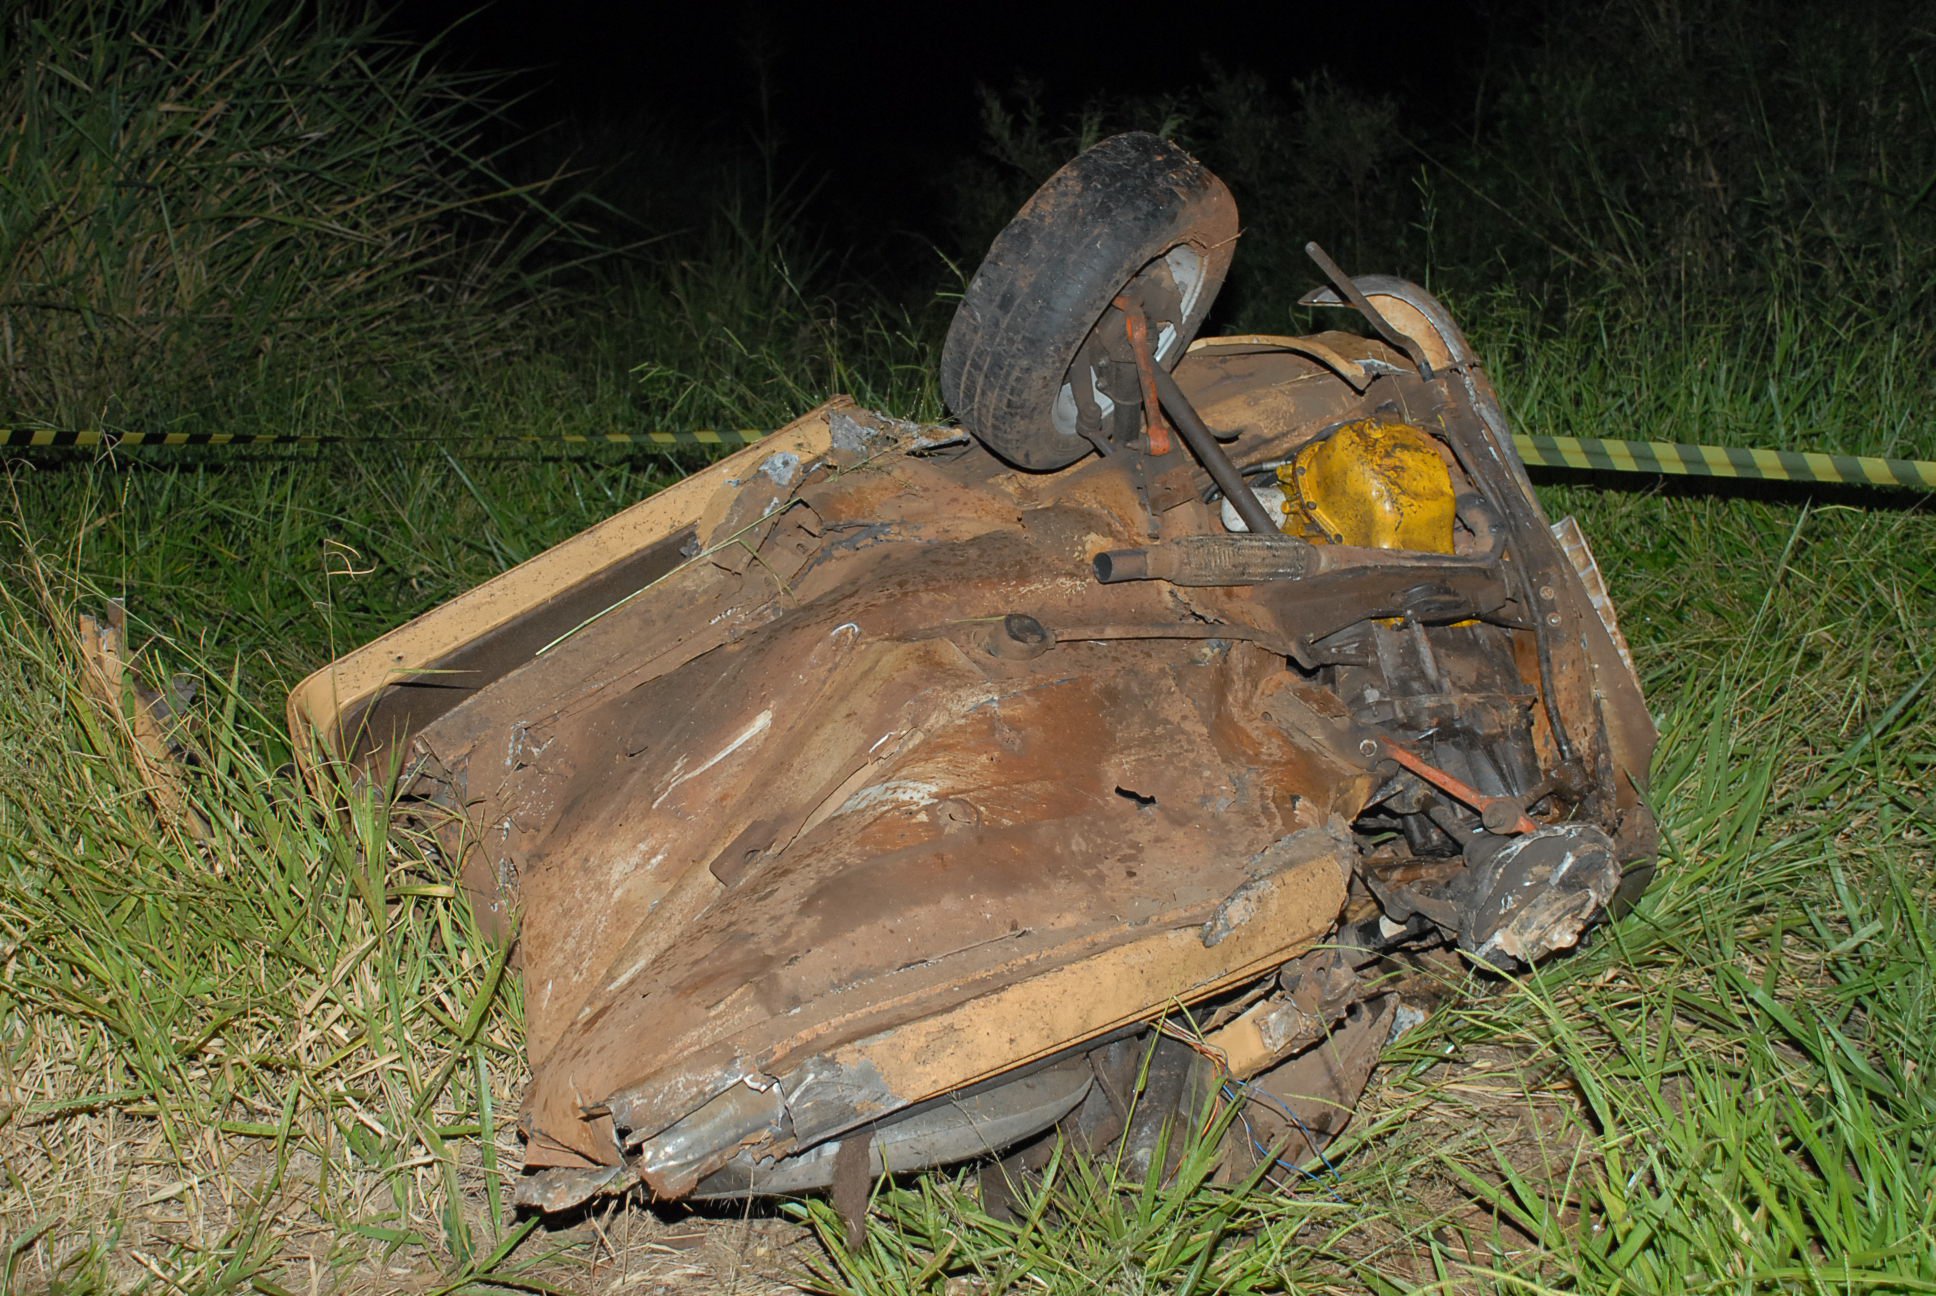 O Fiat 147 foicou partido ao meio e os corpos das vítimas ficaram dilacerados e espalahados na pista